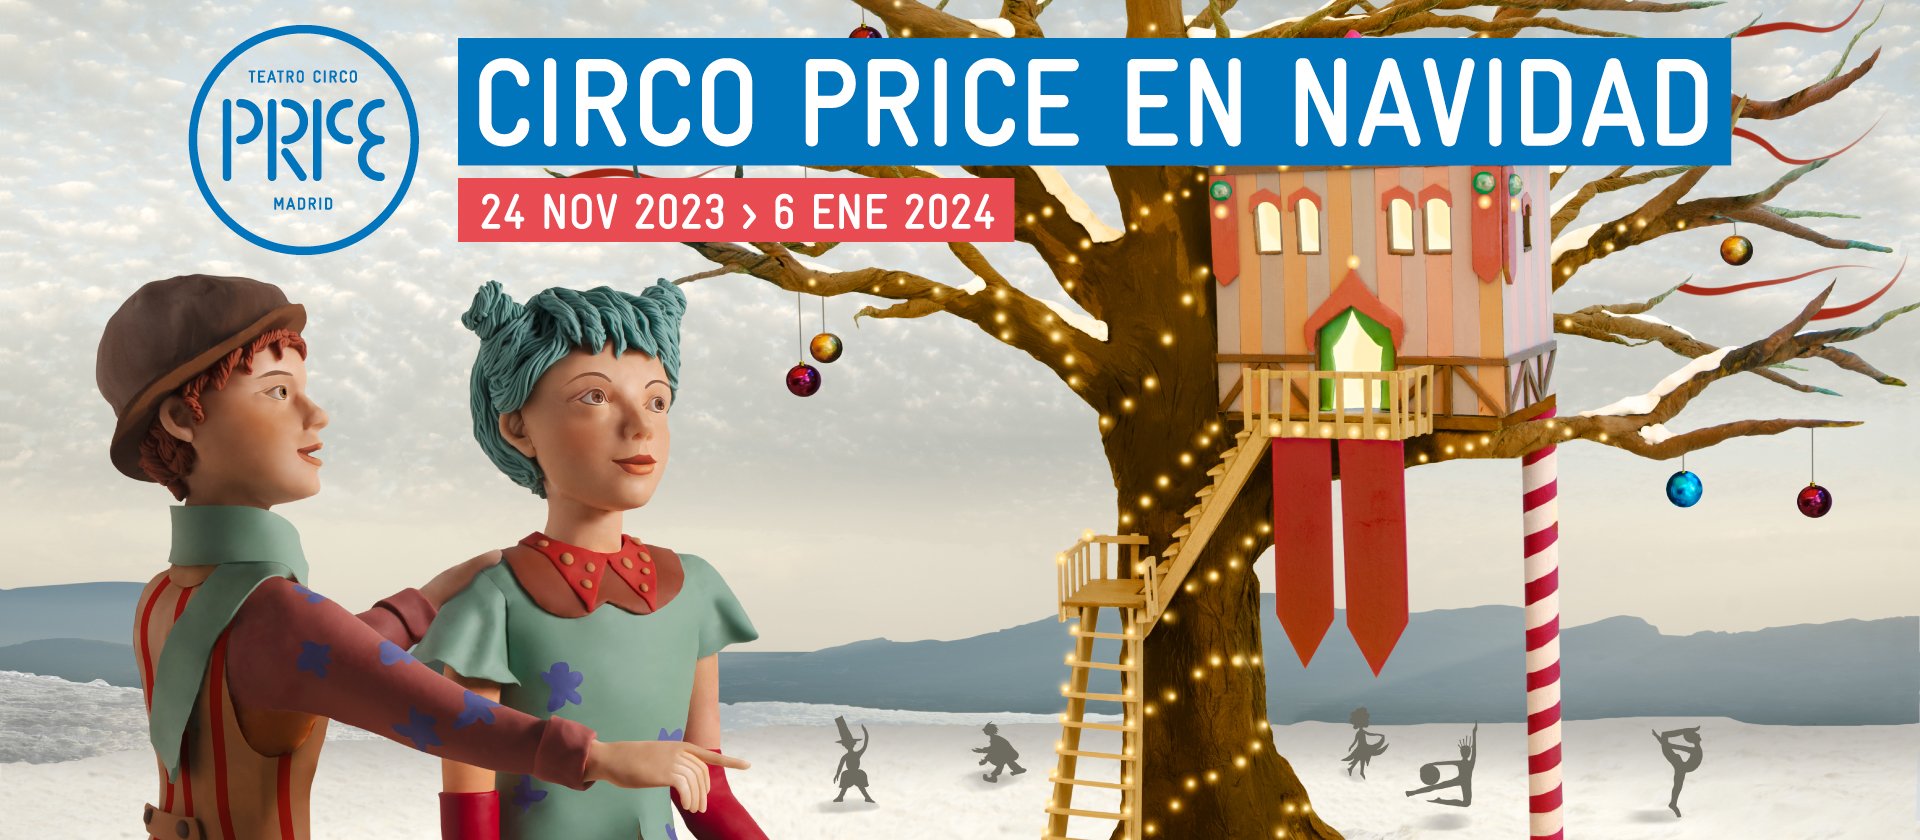 Circo Price en Navidad 2023